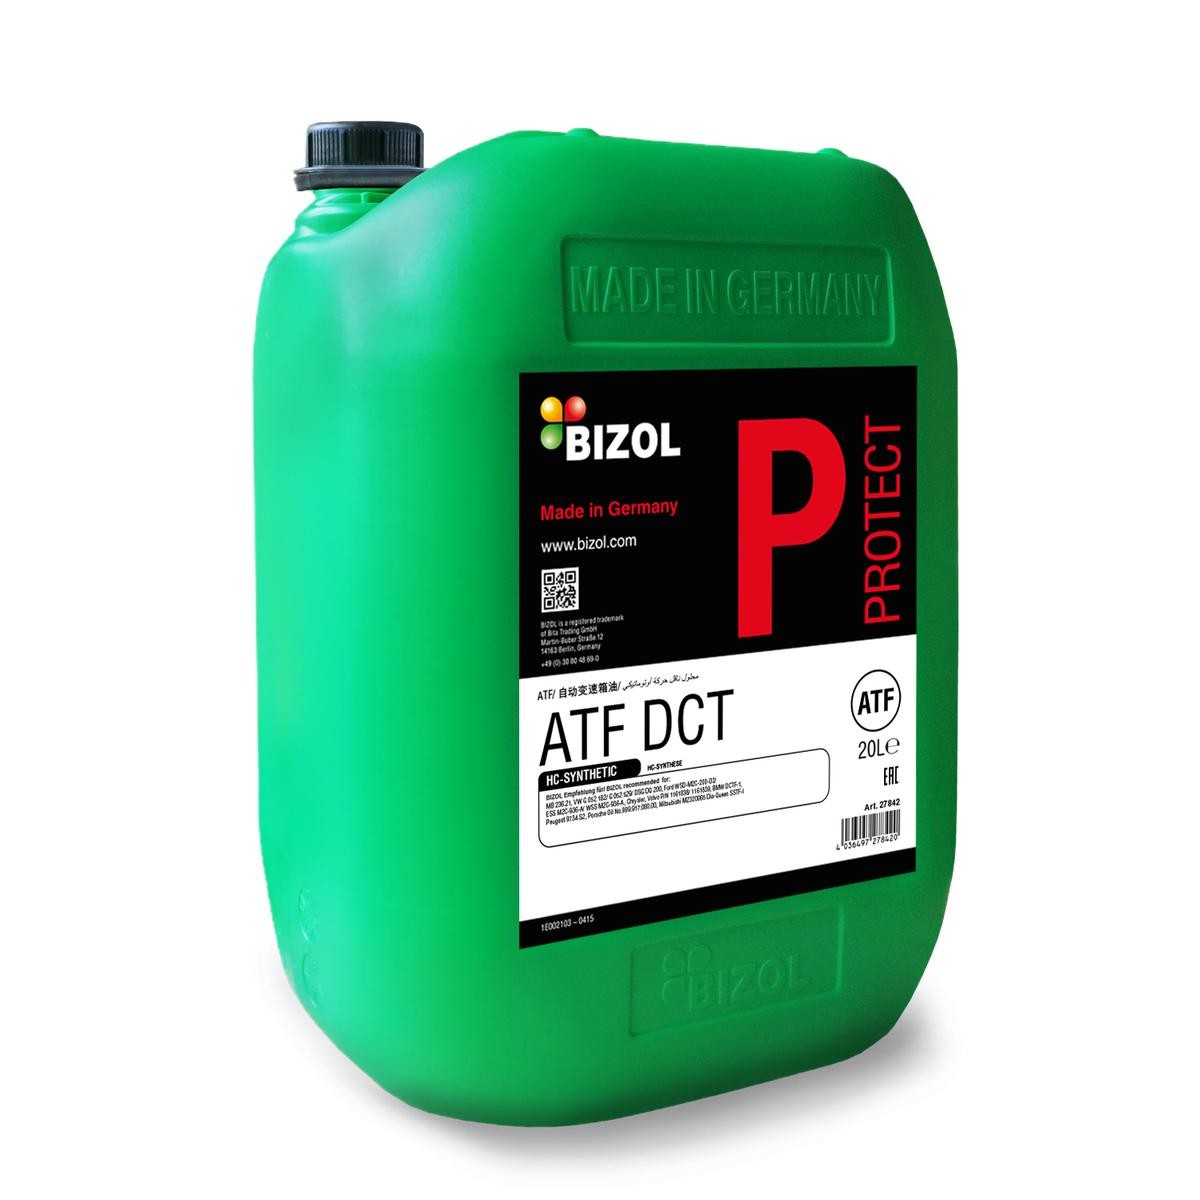 BIZOL Protect, ATF DCT 27842 Olio cambio automatico (ATF)